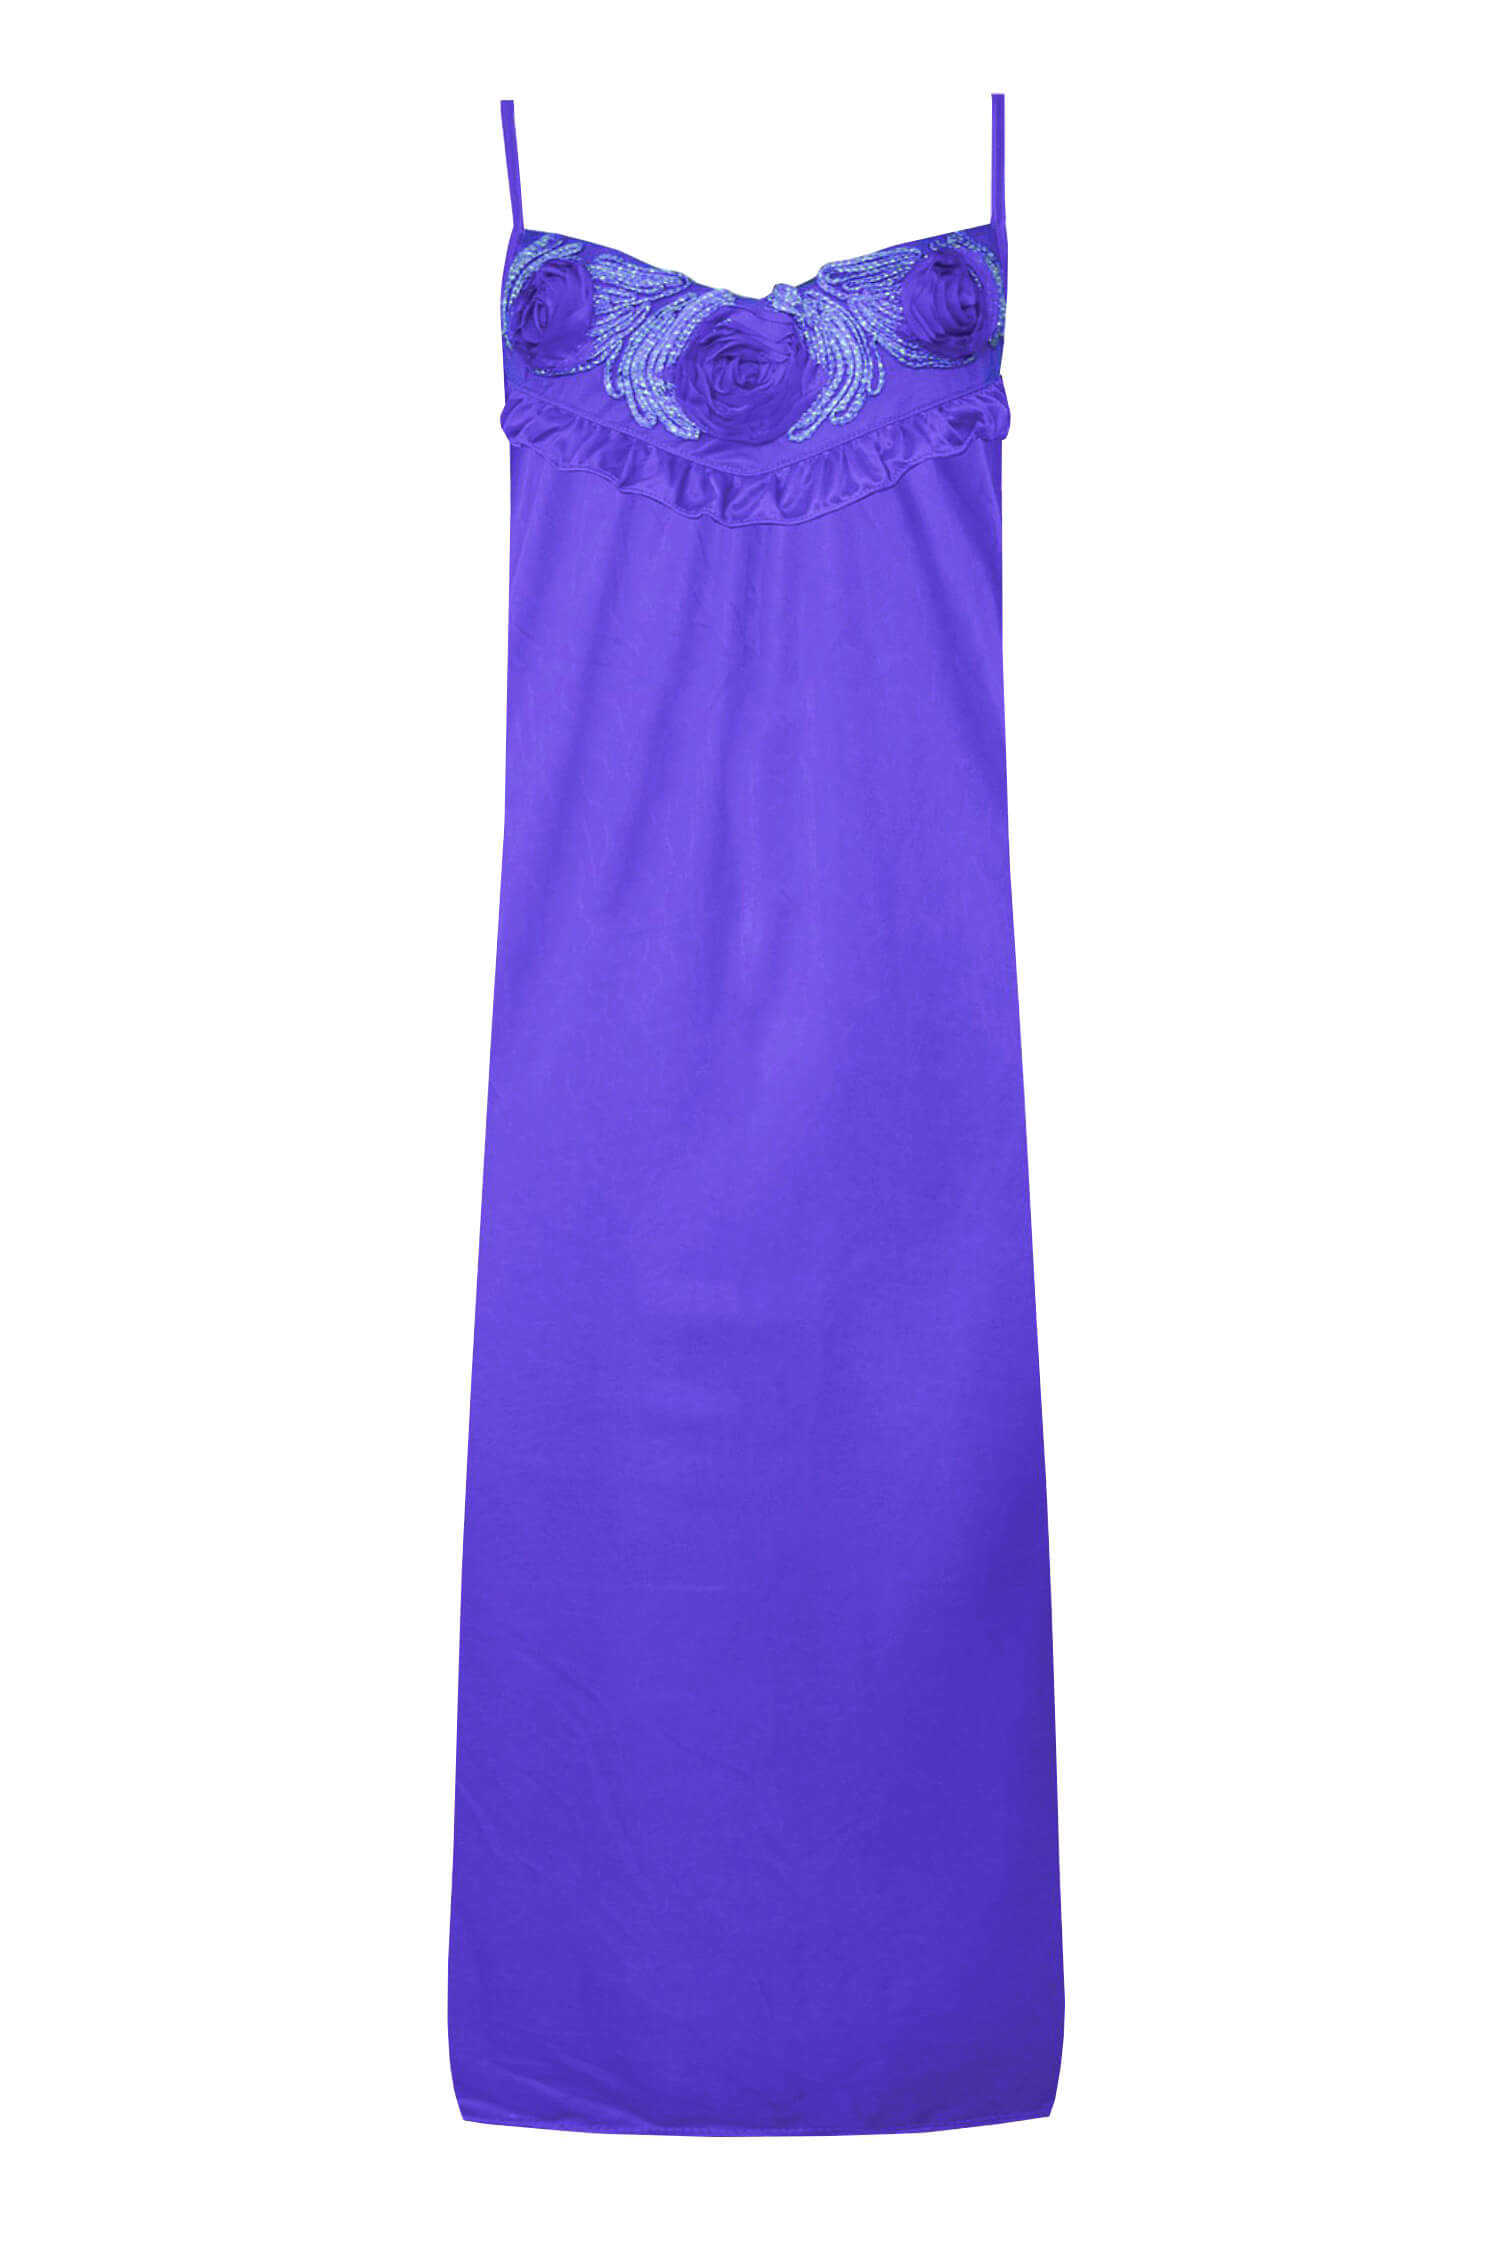 Markétka dámská noční košilka 1104 XXL fialová